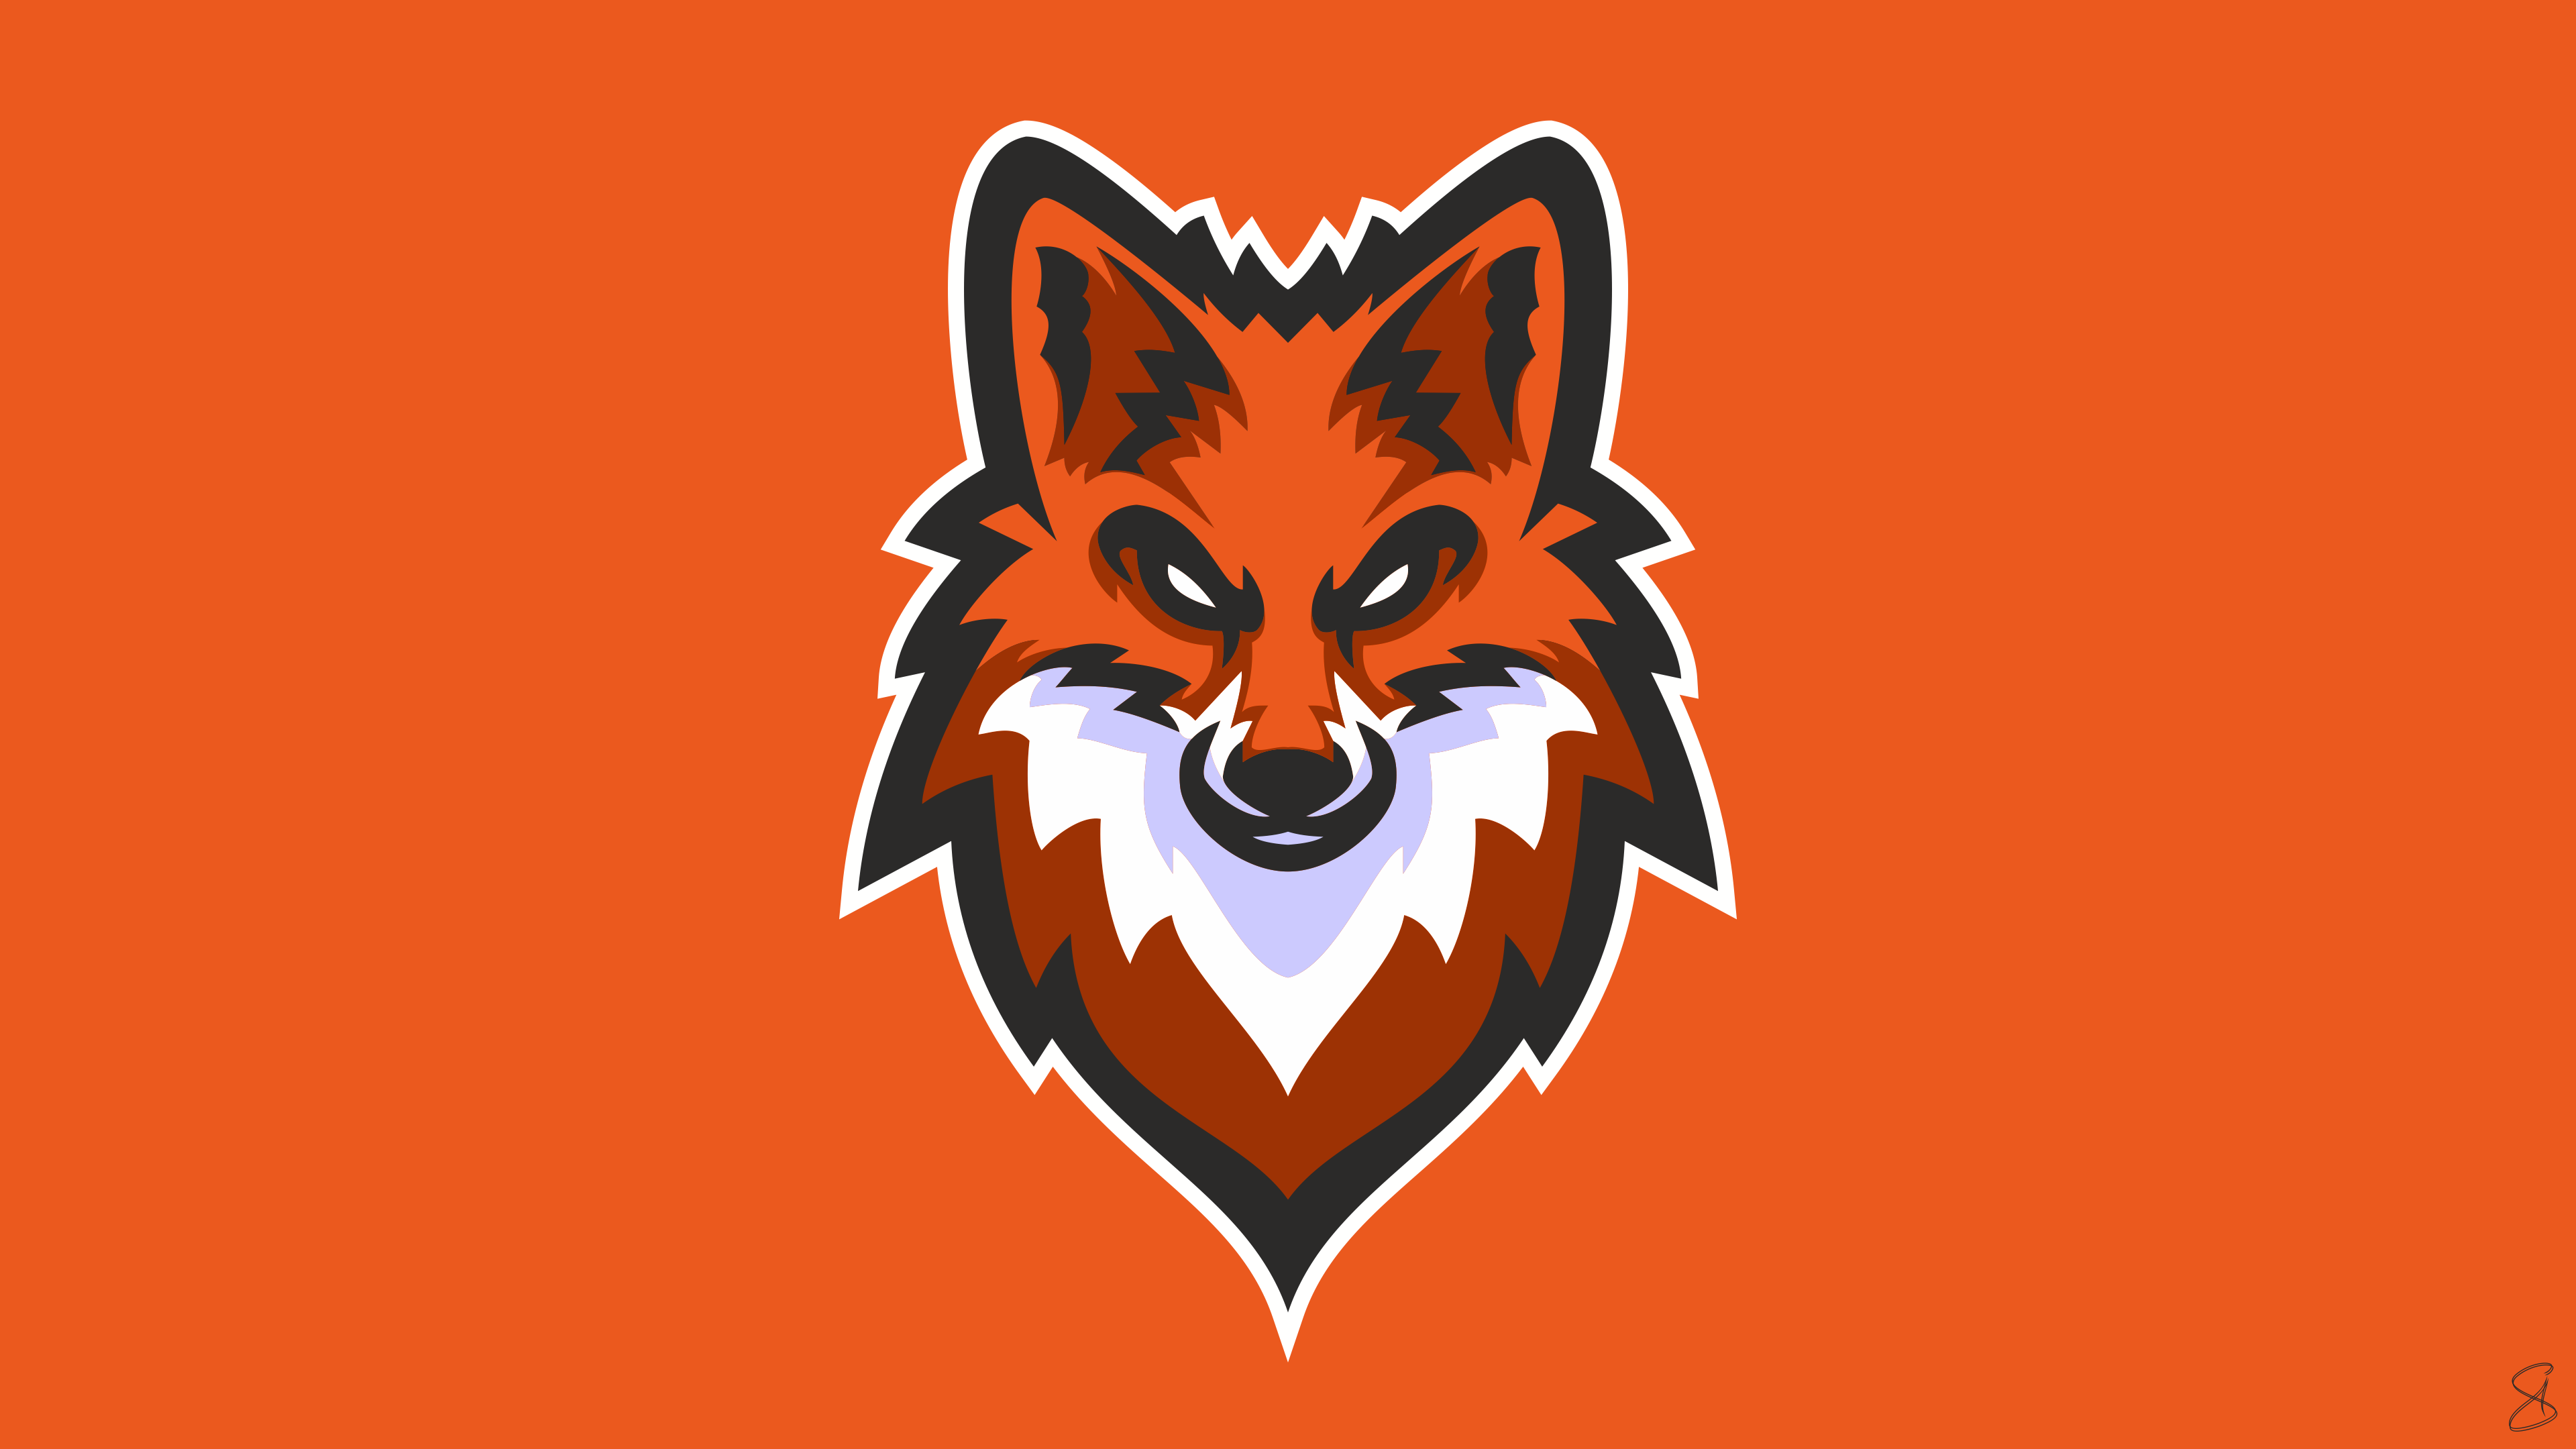 Fox Graphic Design Orange Color Wallpaper:3840x2160